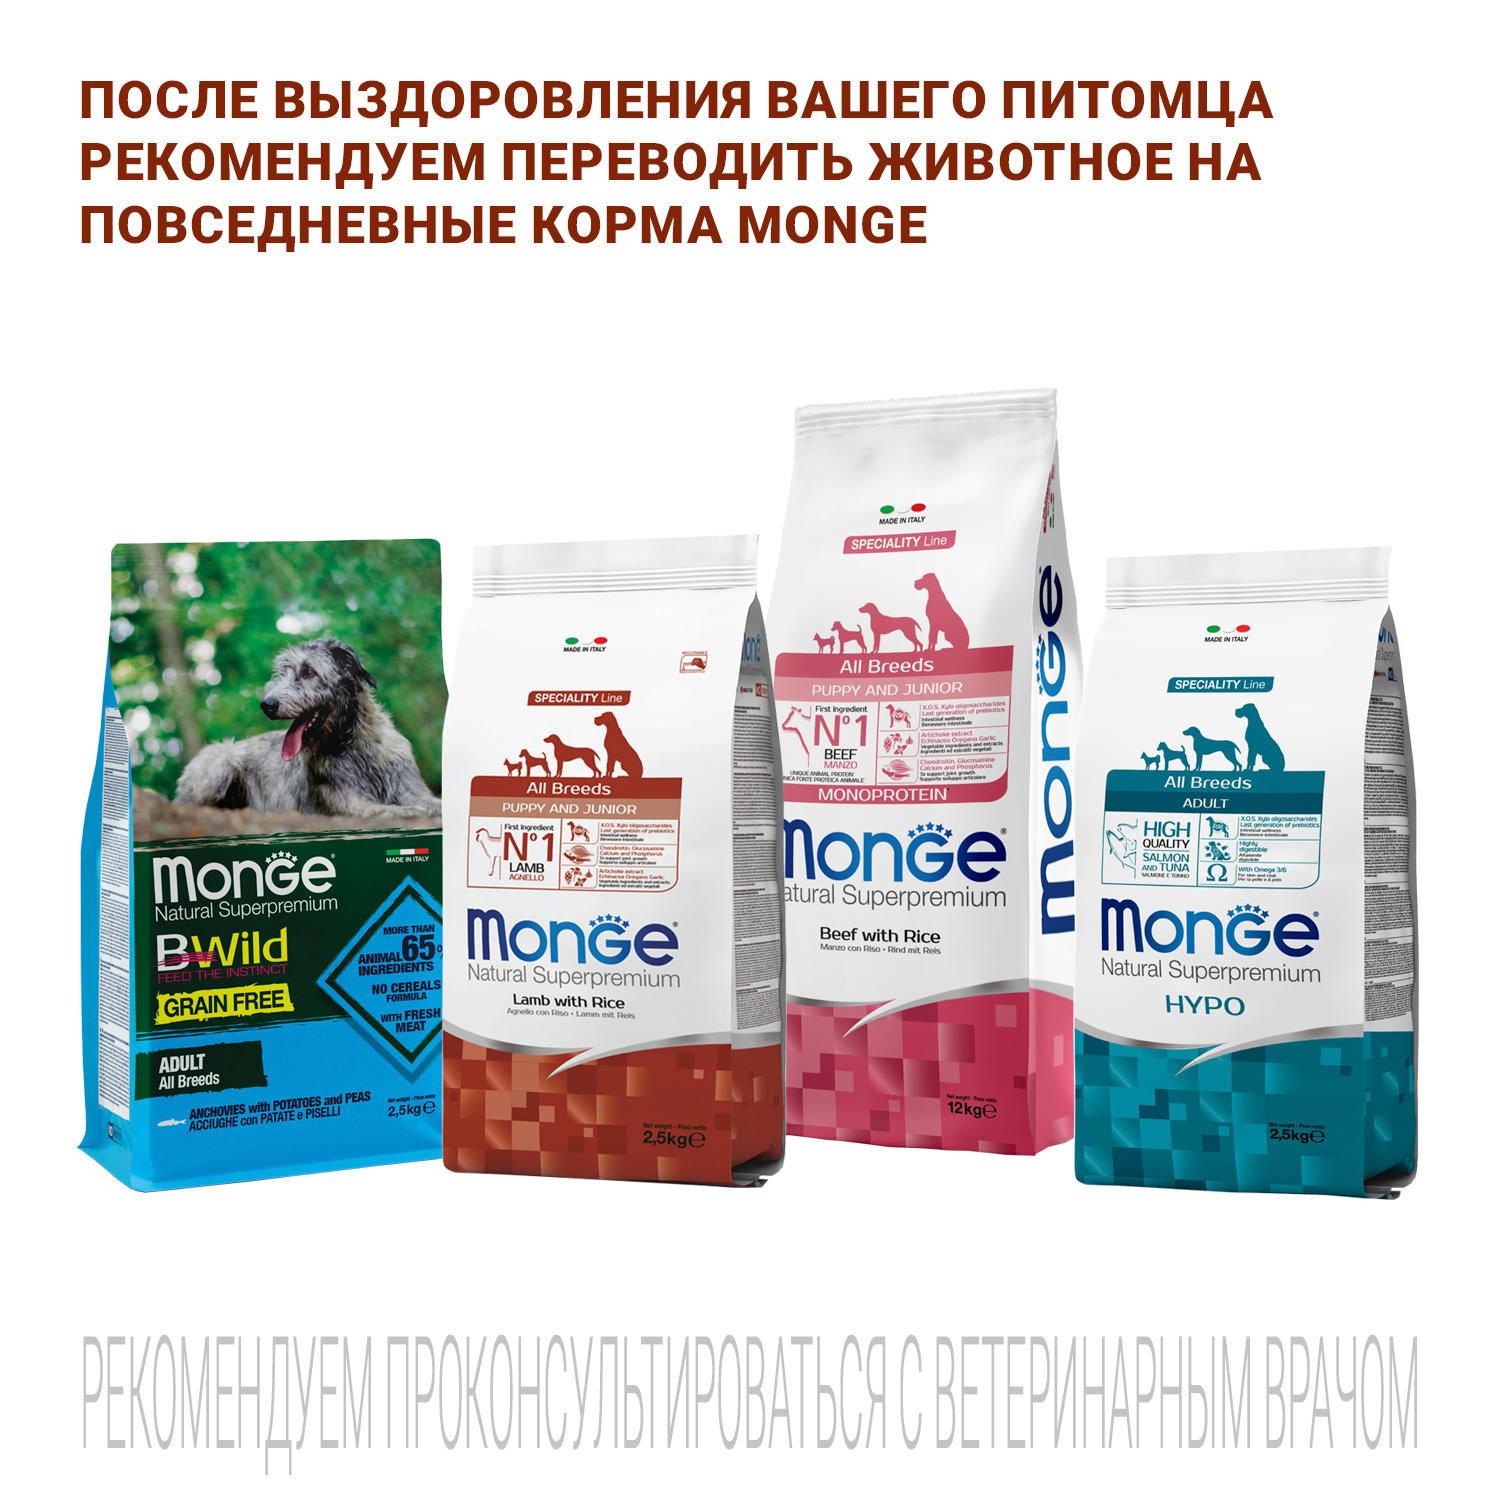 Ветеринарная диета Monge VetSolution Dog Renal and Oxalate Ренал и Оксалат для собак при ХПН 12 кг